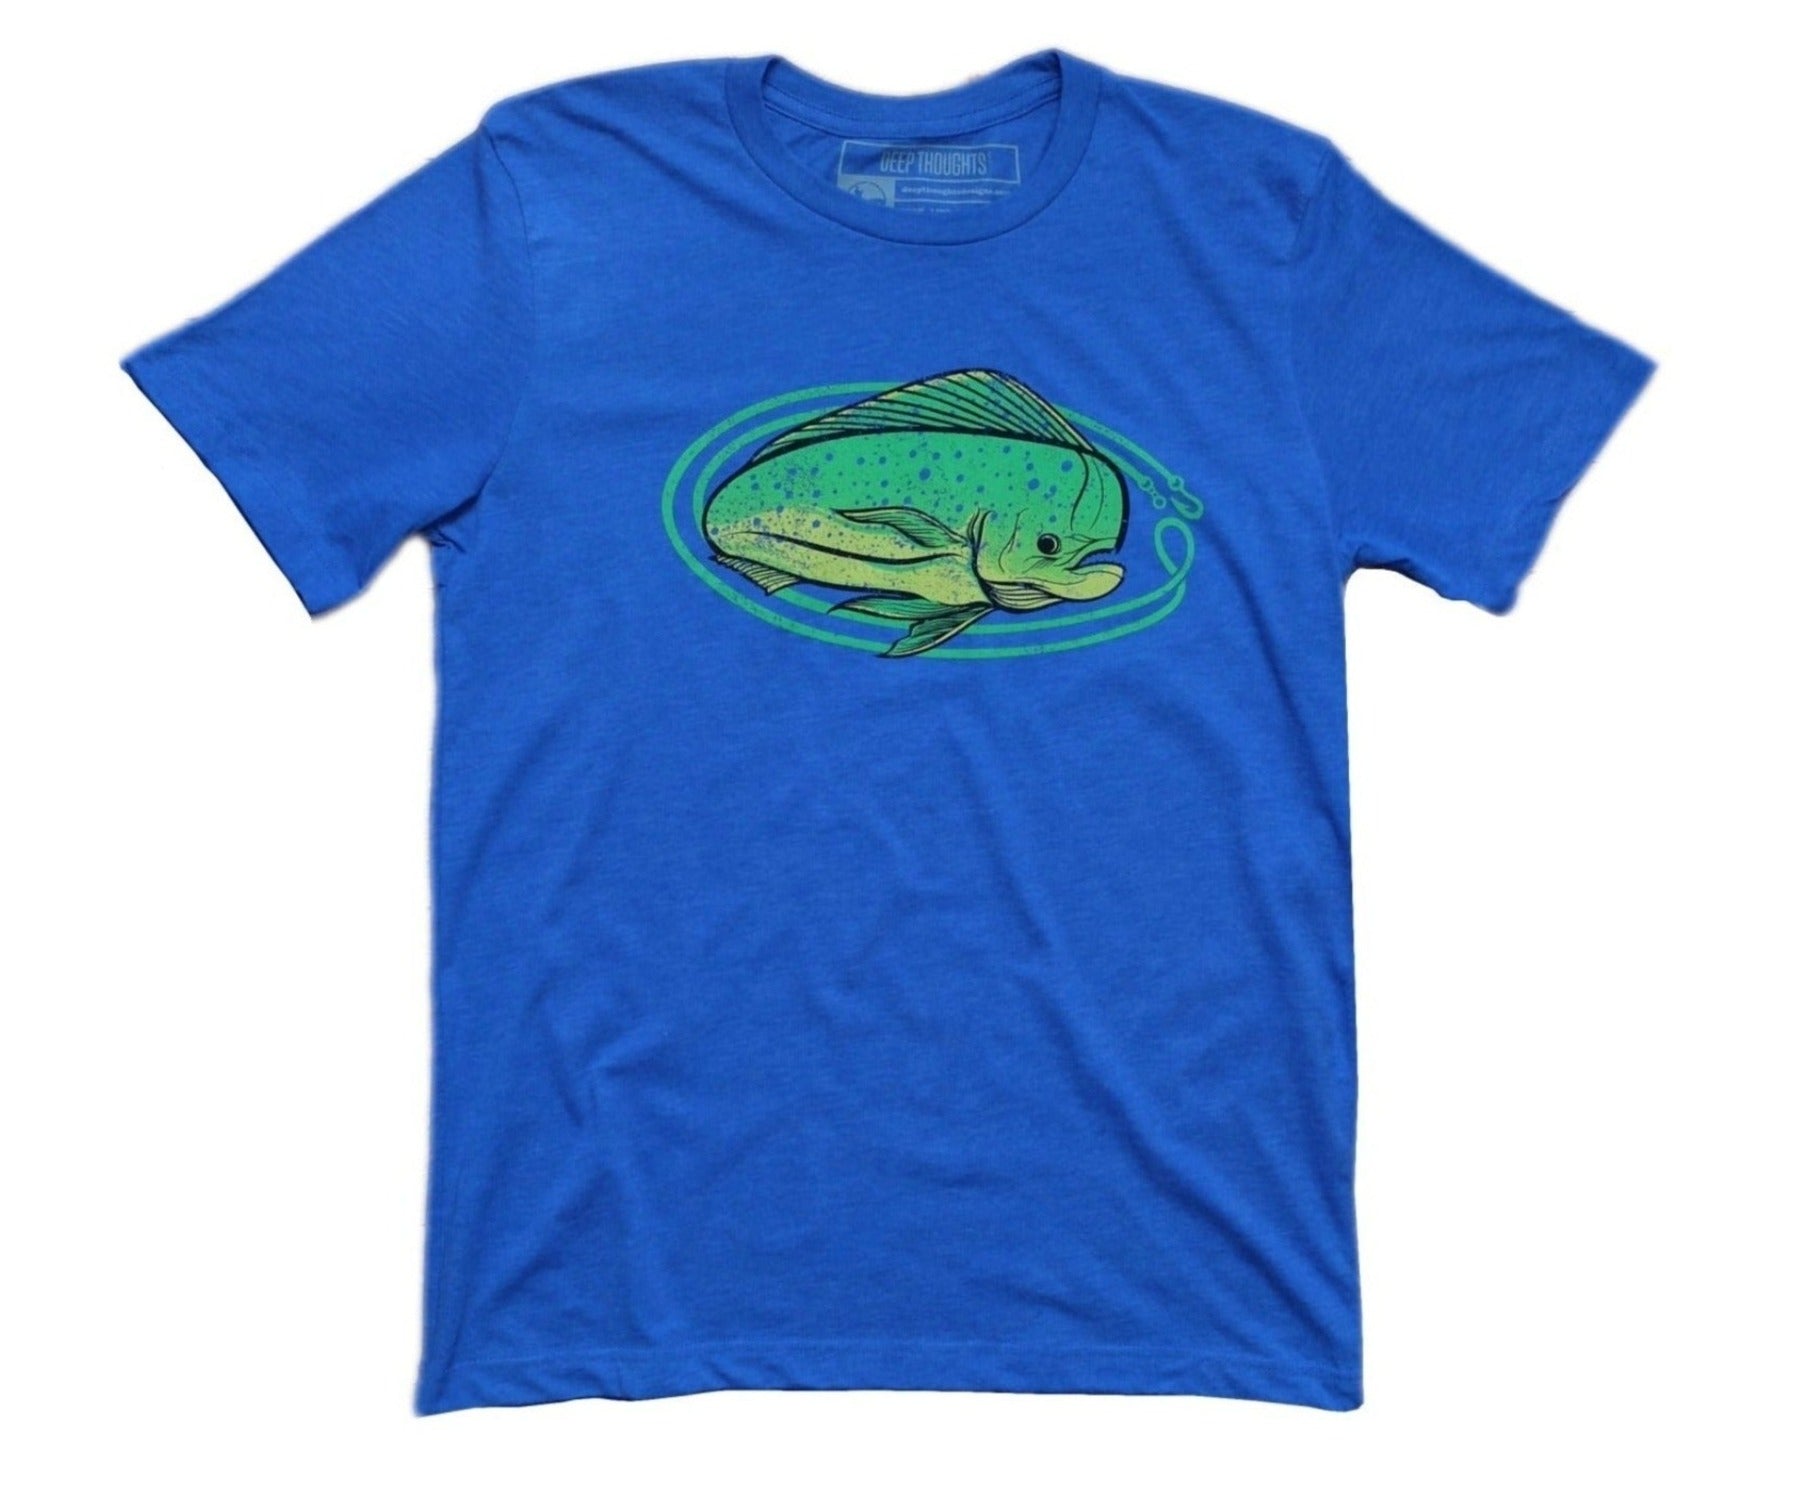 Lemon Lime Mahi' Fishing T-Shirt - Heather Royal Blue S